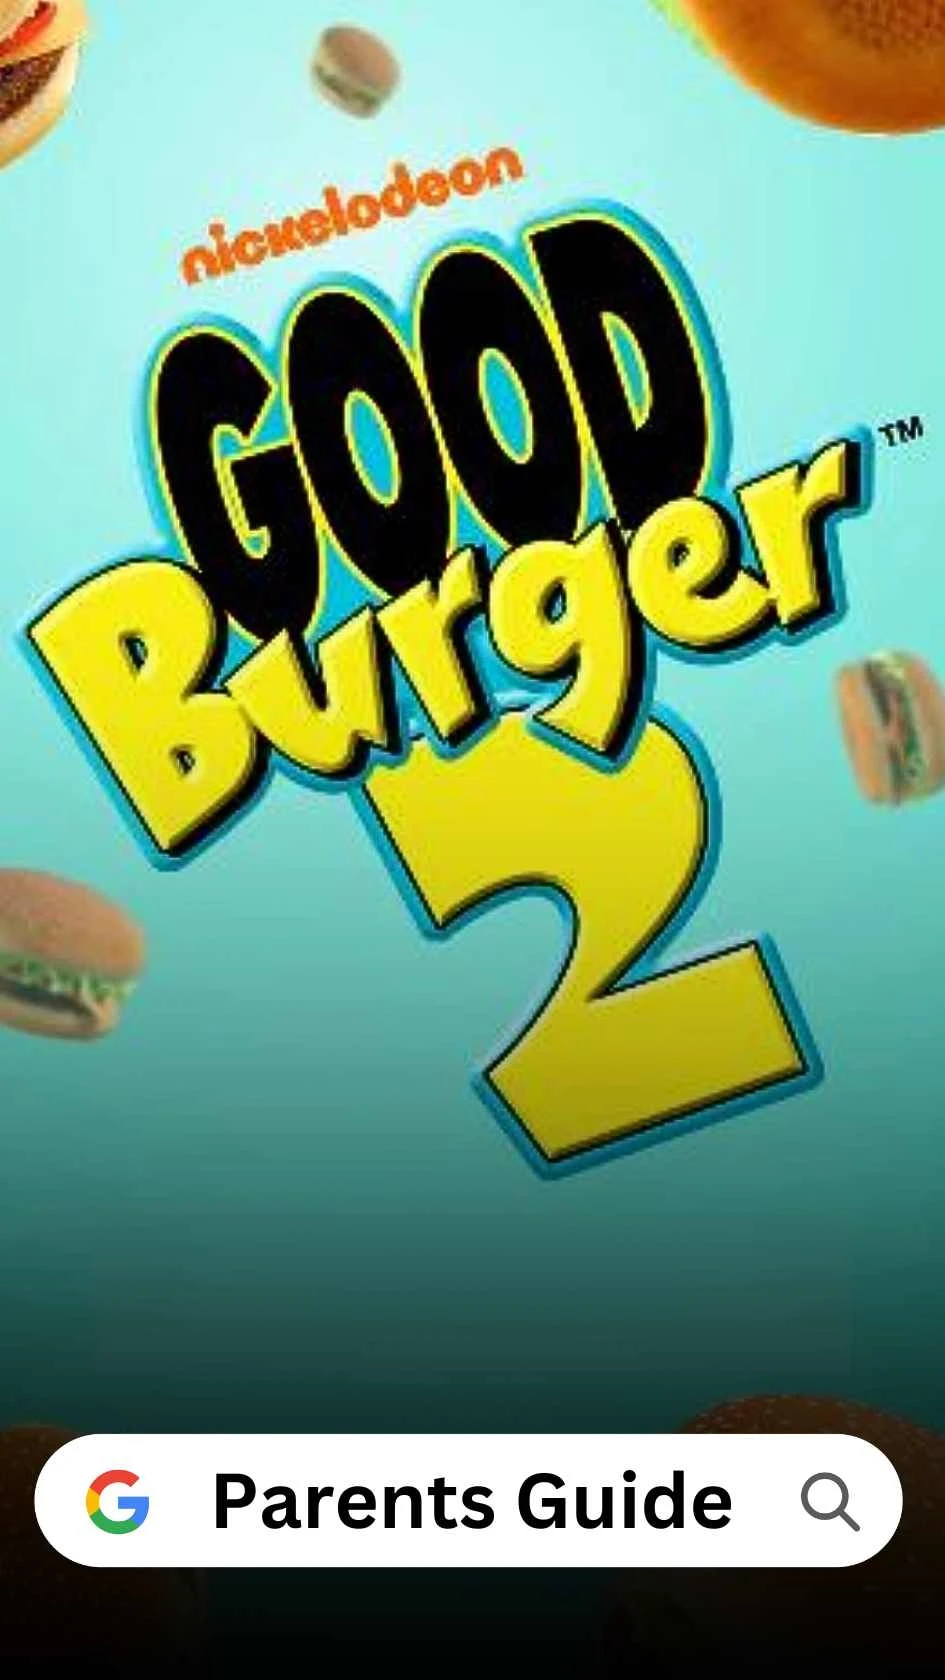 Good Burger 2 Parents Guide